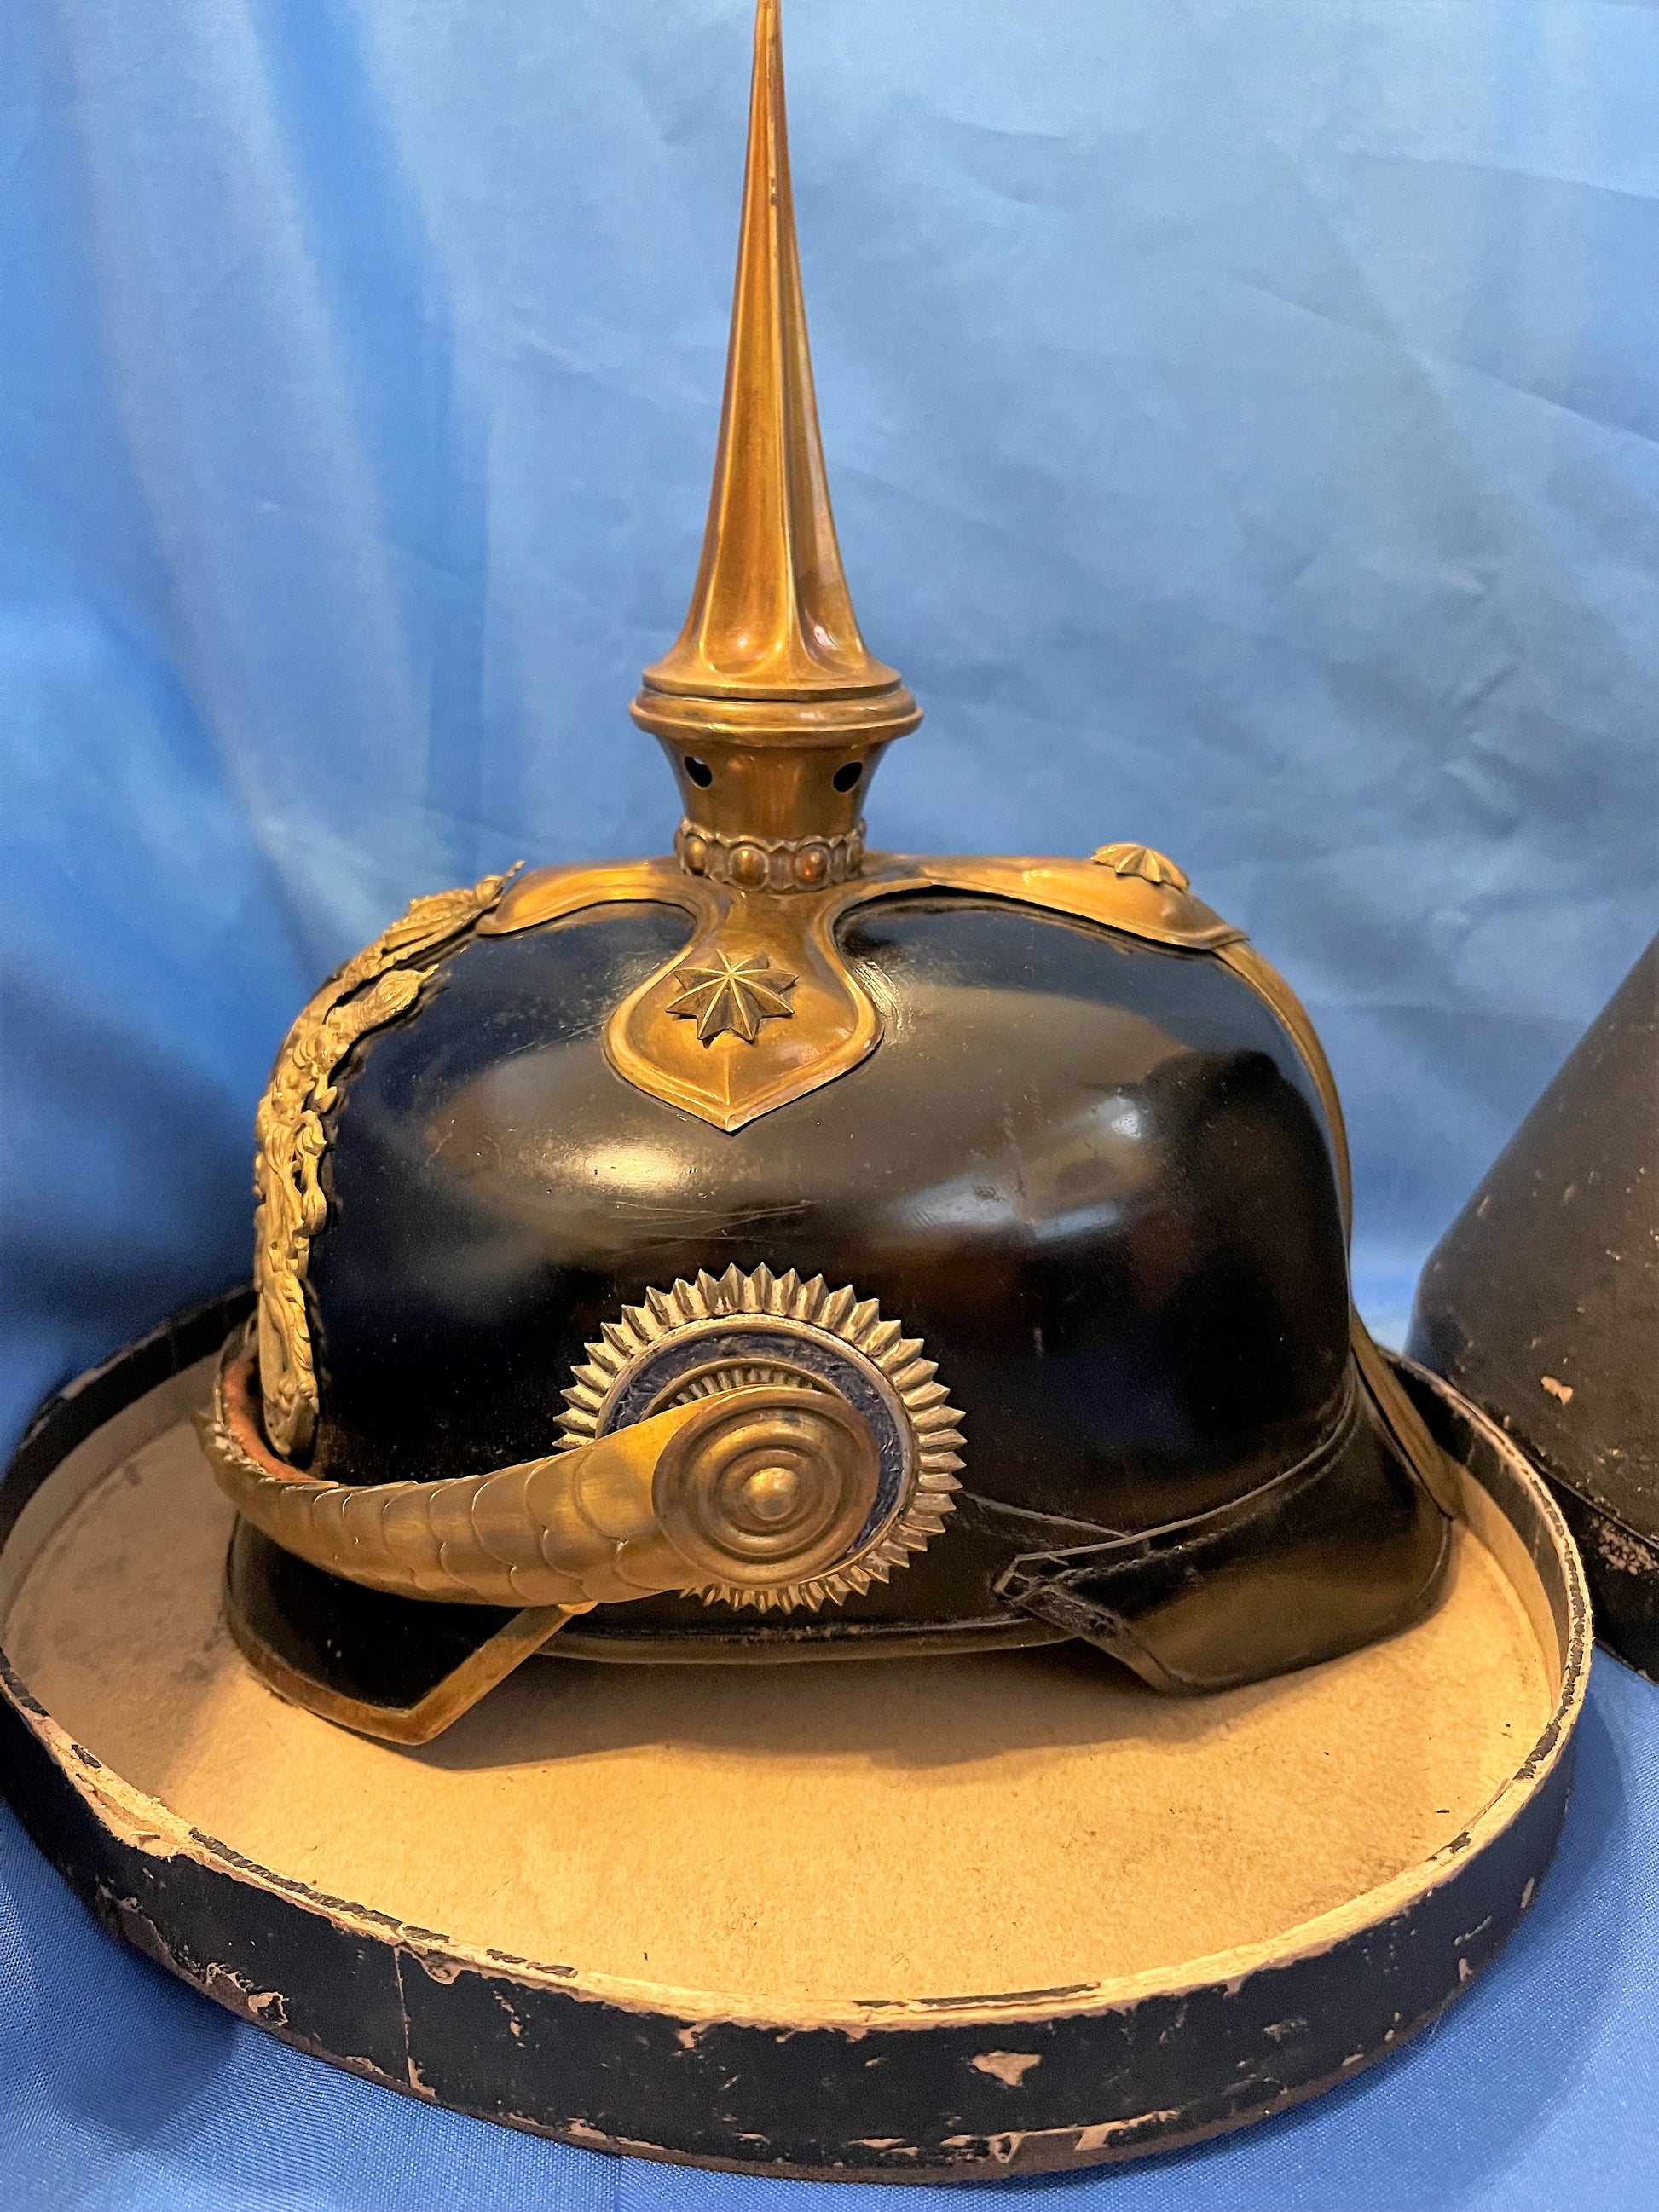 Bavaria Pickelhaube / Spiked Helmet for Officer in Reserve Infantry - Derrittmeister Militaria Group